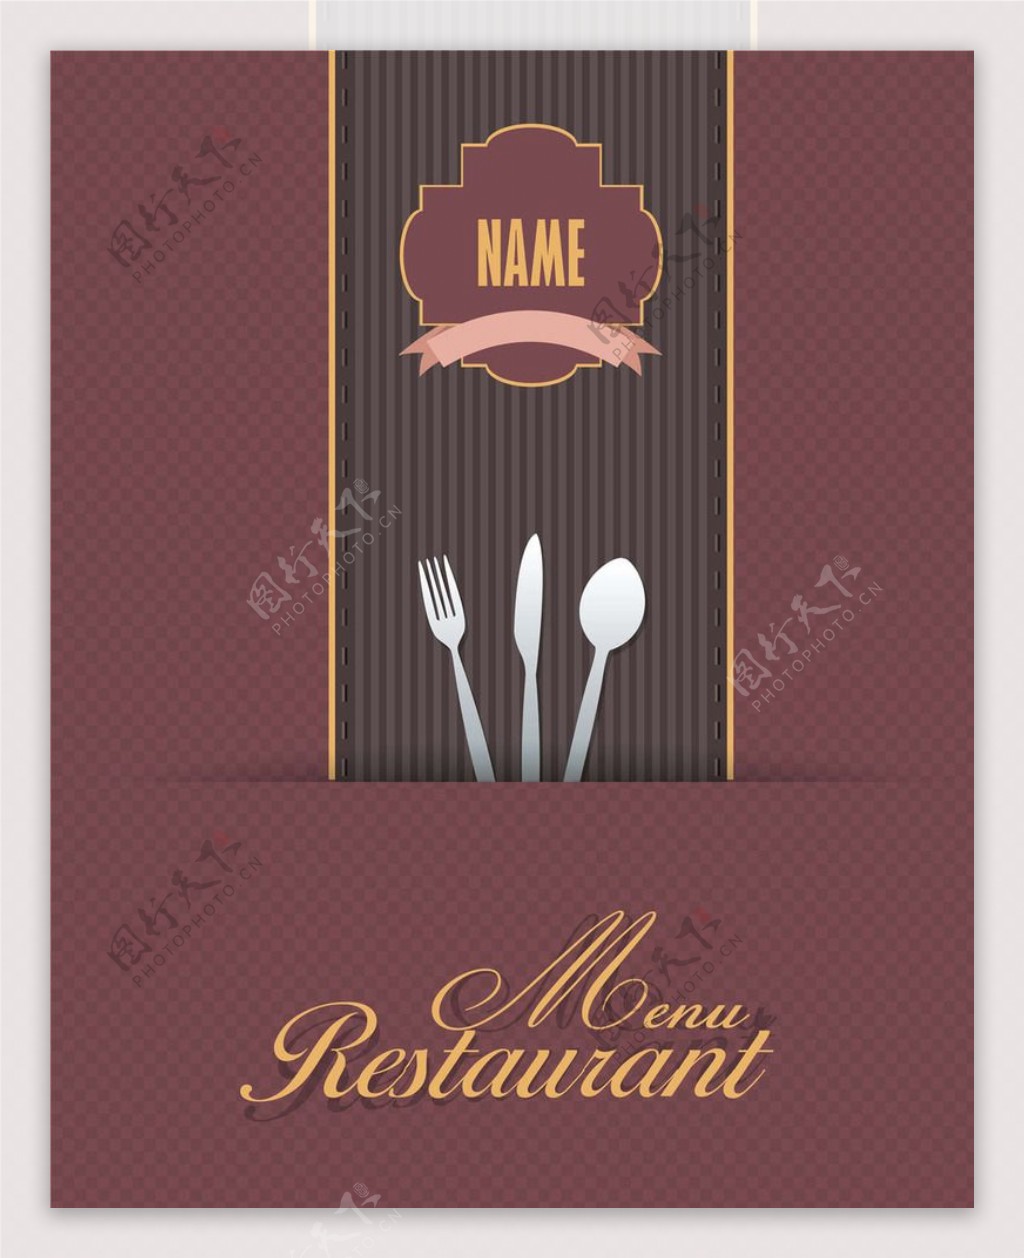 饭店菜单图标图片